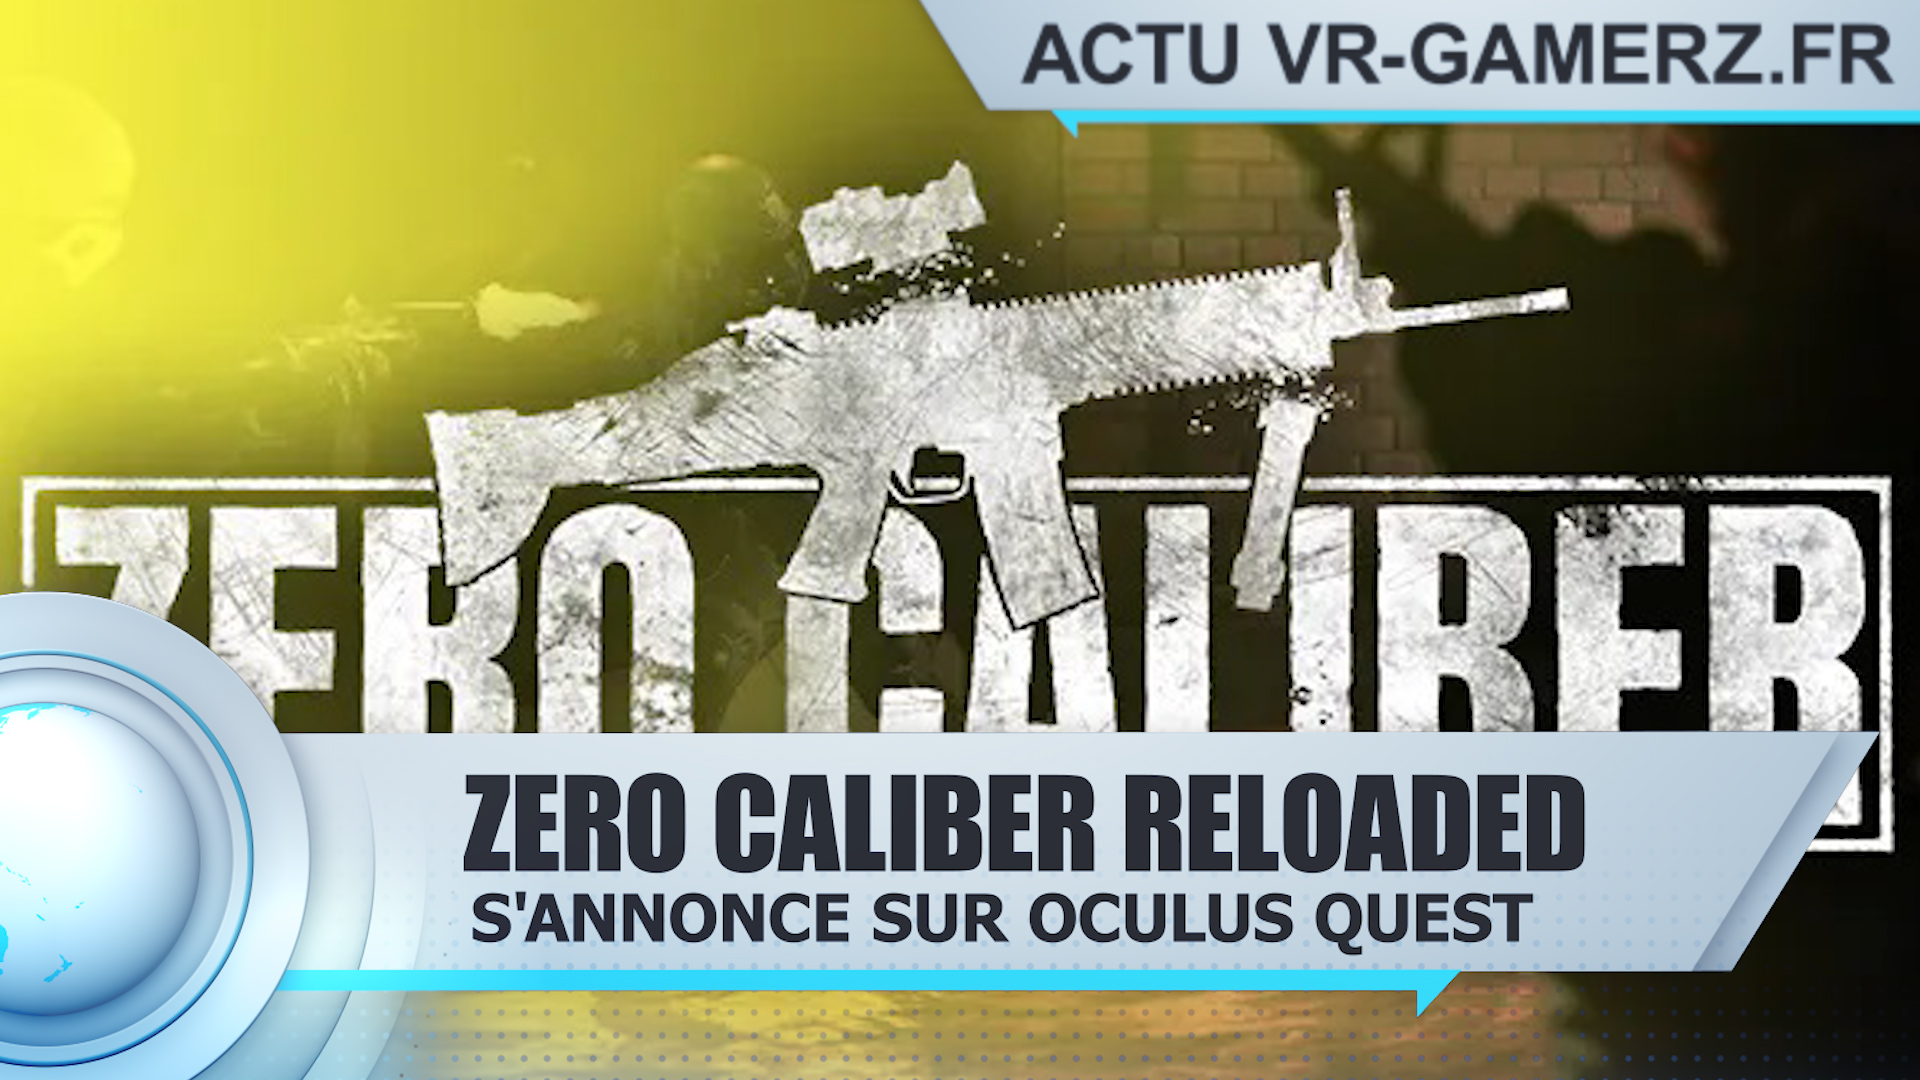 Zero caliber reloaded s’annonce sur Oculus quest